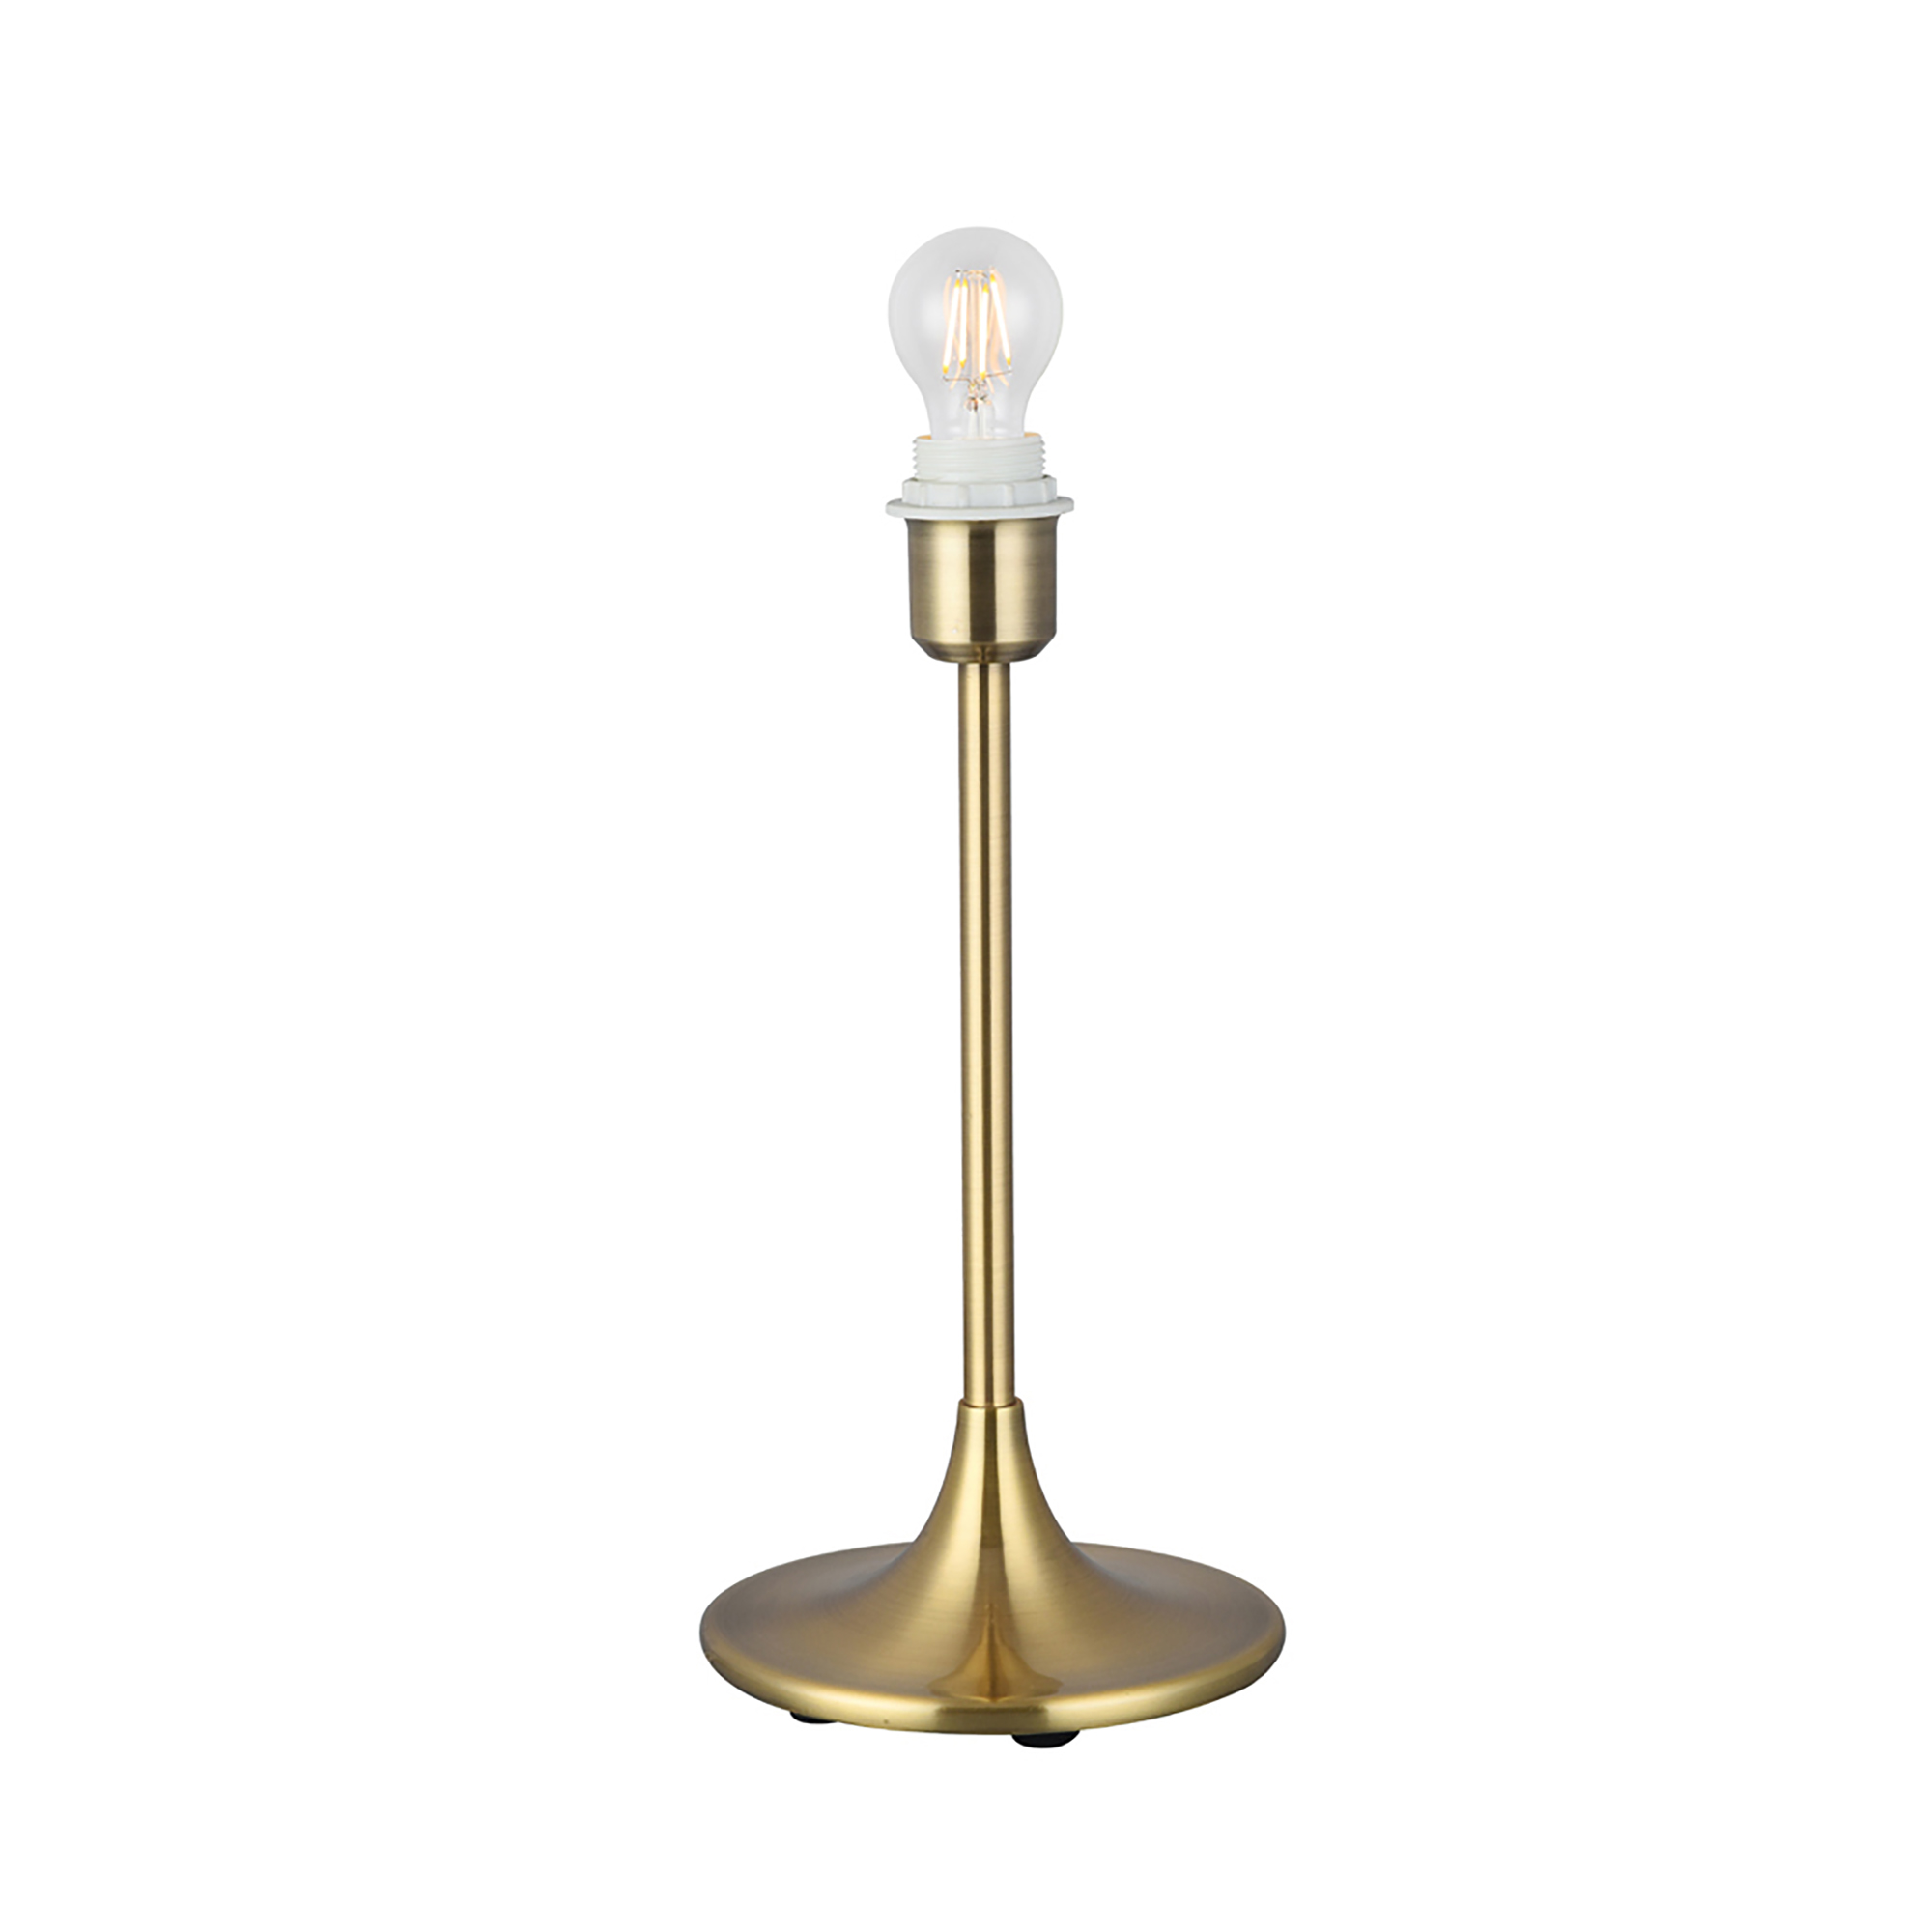 D0349  Crowne 39cm 1 Light Table Lamp Antique Brass